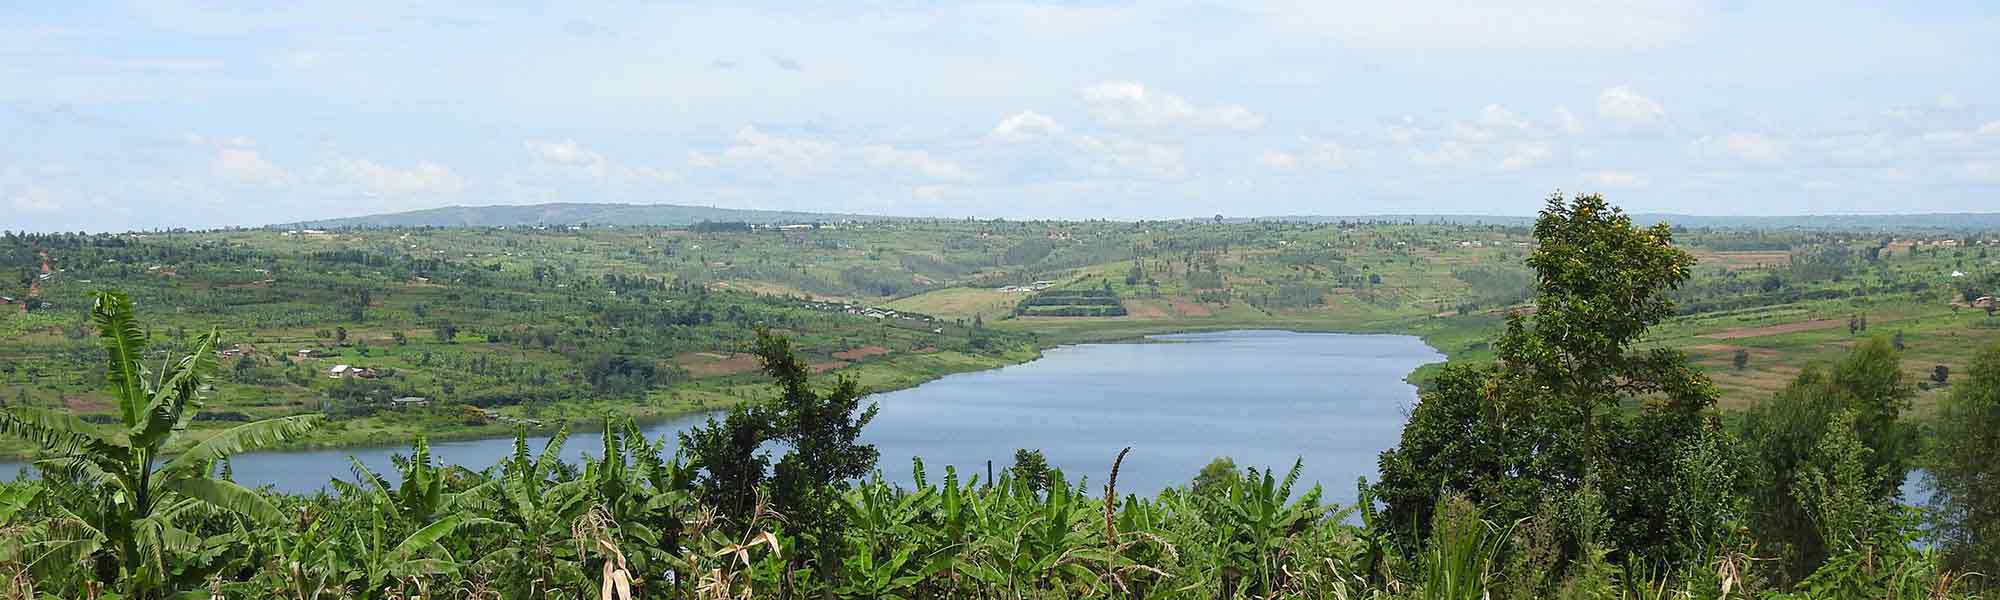 Innsjø i Rwanda omgitt av grønt landskap